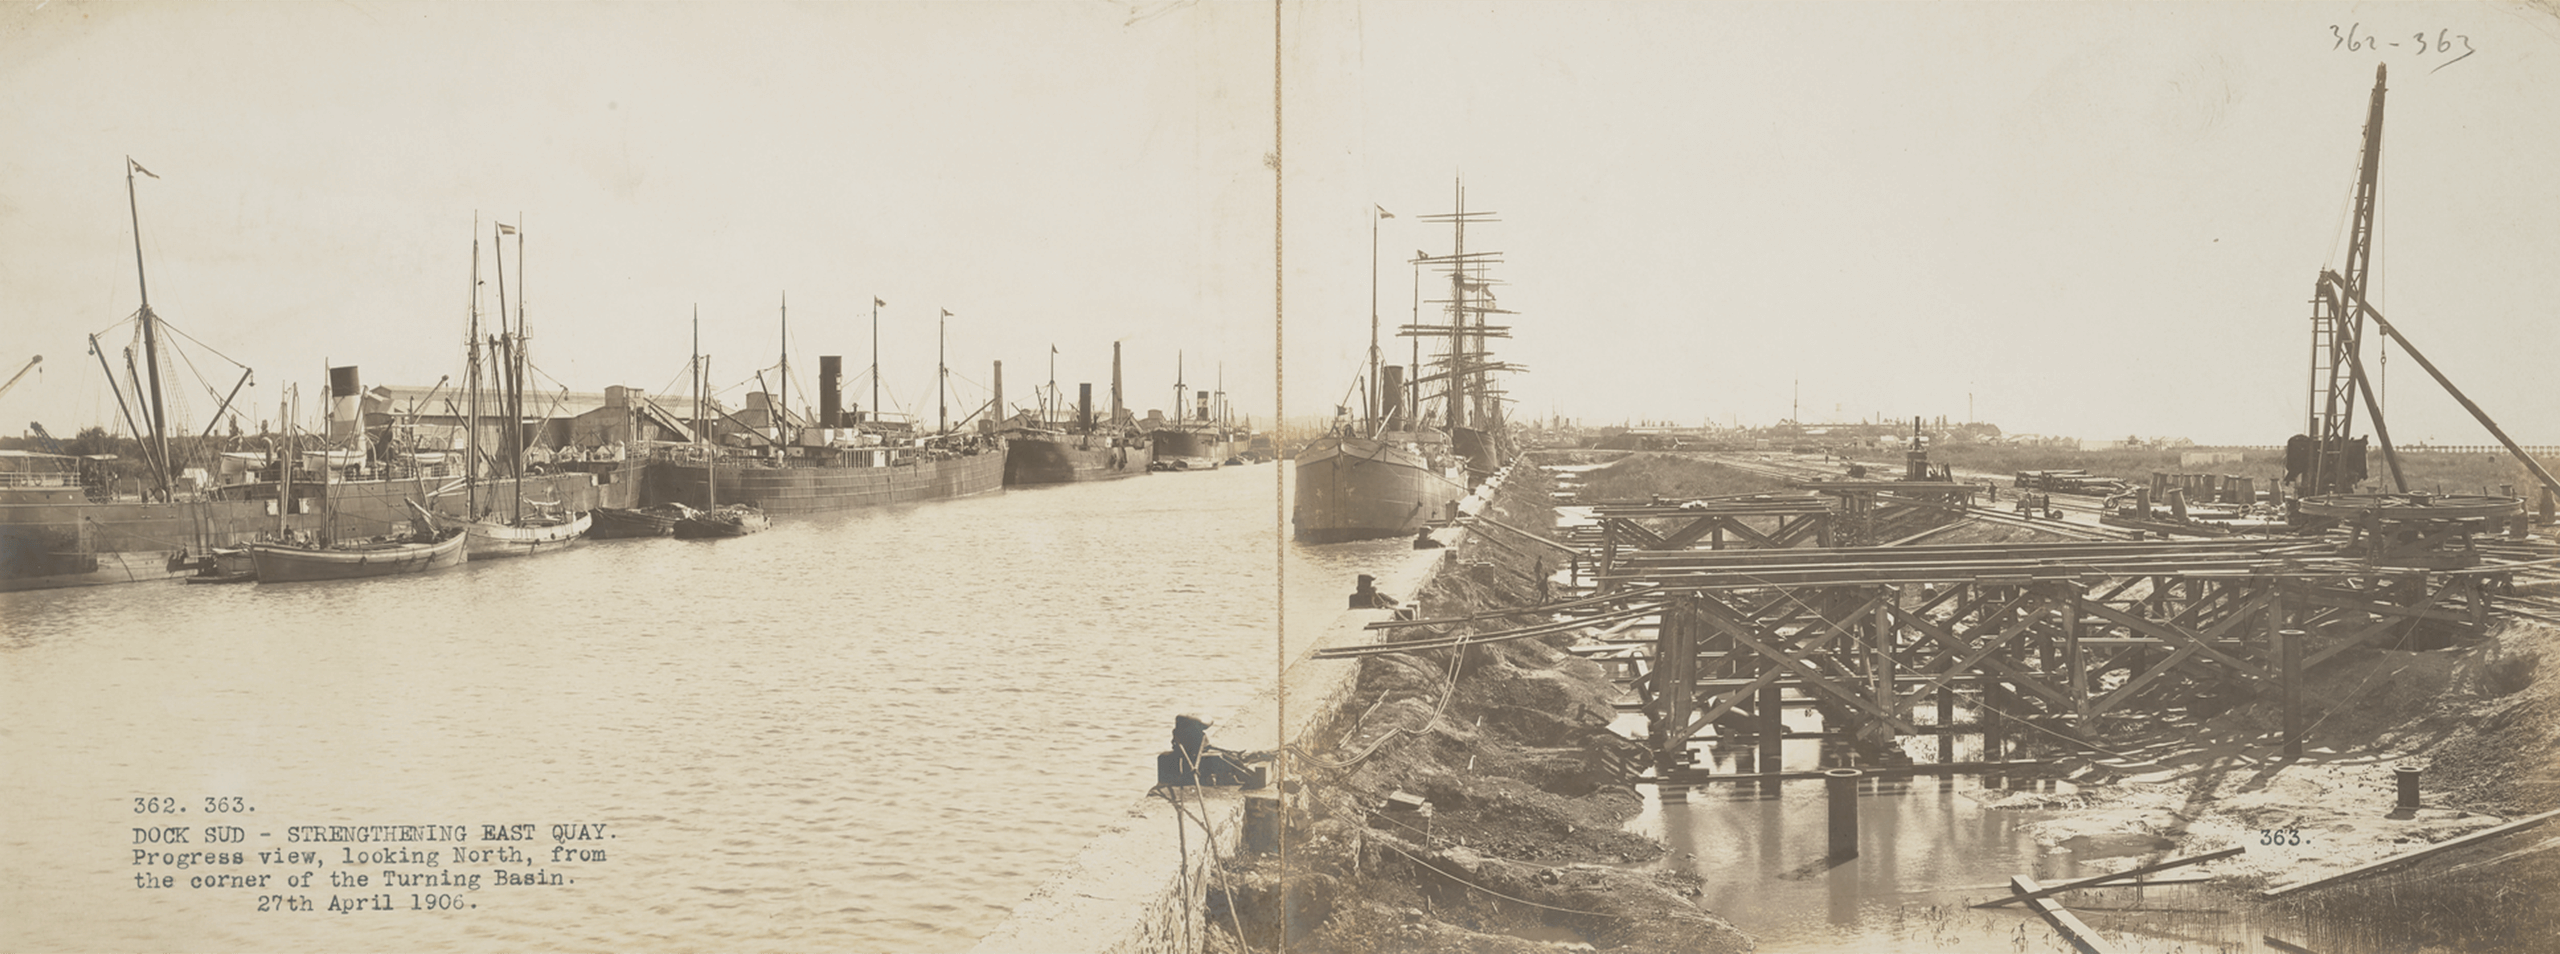 Dock Sud, Buenos Aires | La metrópolis en América Latina, 1830-1930 | Museo Amparo, Puebla